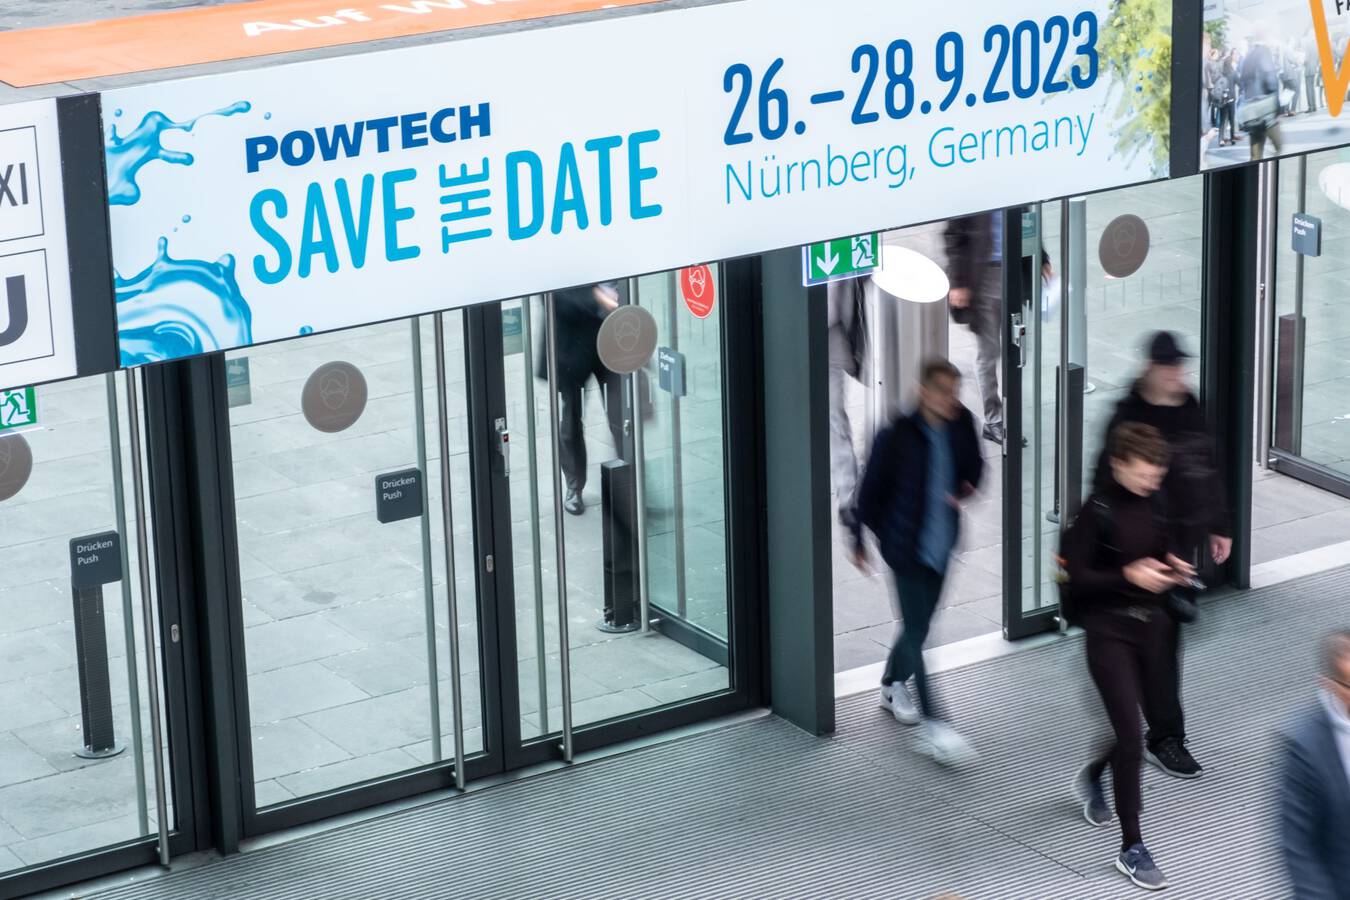 POWTECH 2023: Durchstarten mit neuen Themen und Technologien Die POWTECH startet durch. Vom 26. bis 28. September 2023 wird die europäische Processing-Leitmesse in Nürnberg stattfinden – fast genau ein Jahr nach der POWTECH 2022. Über 700 internationale Aussteller aus werden erwartet.